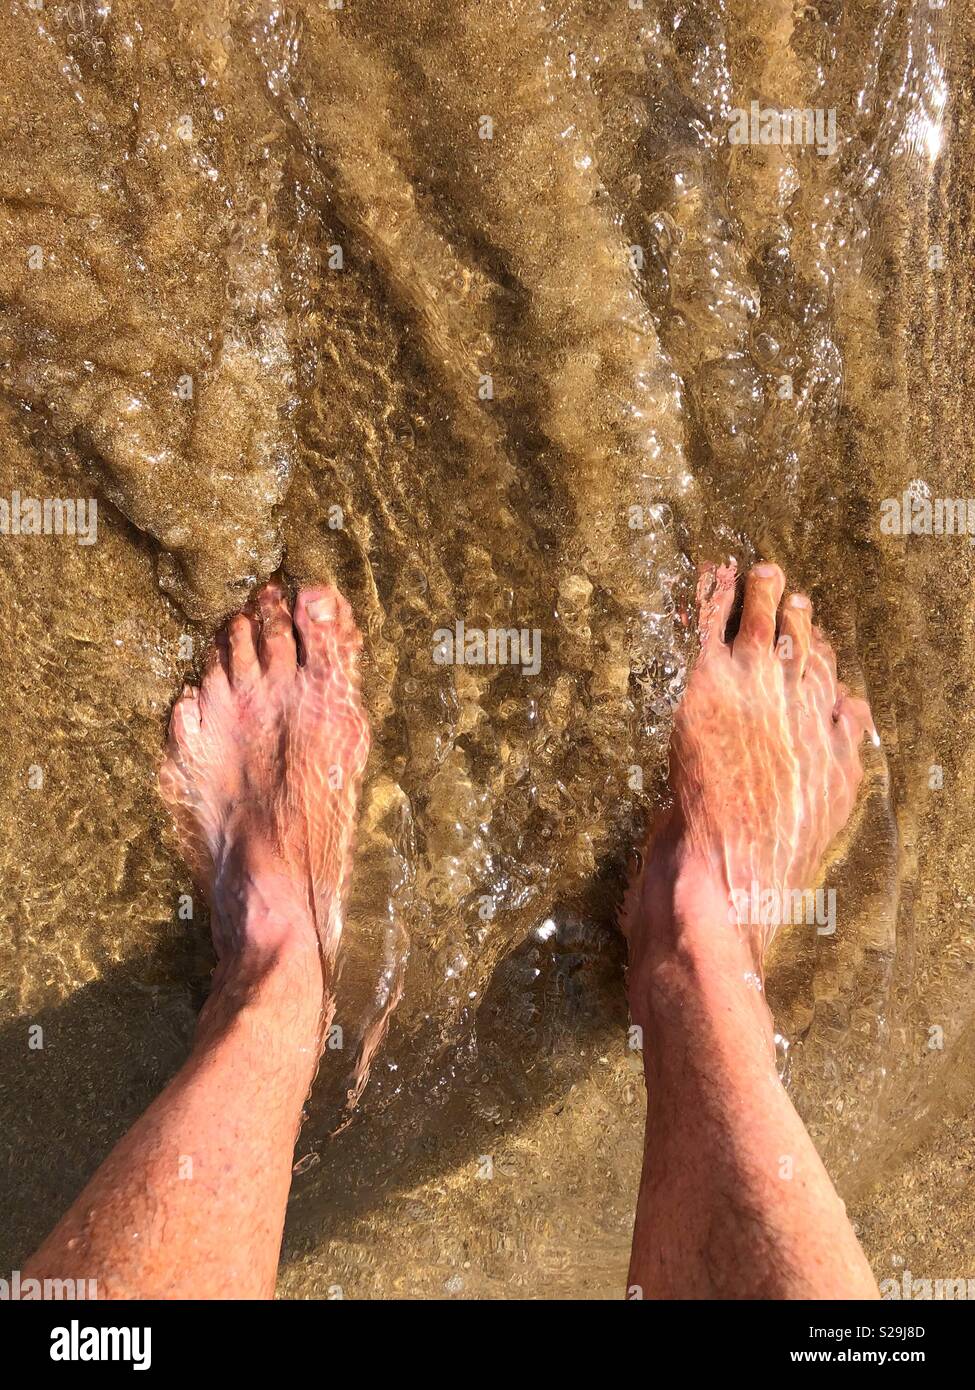 Man’s feet in the sea on a sandy beach Stock Photo